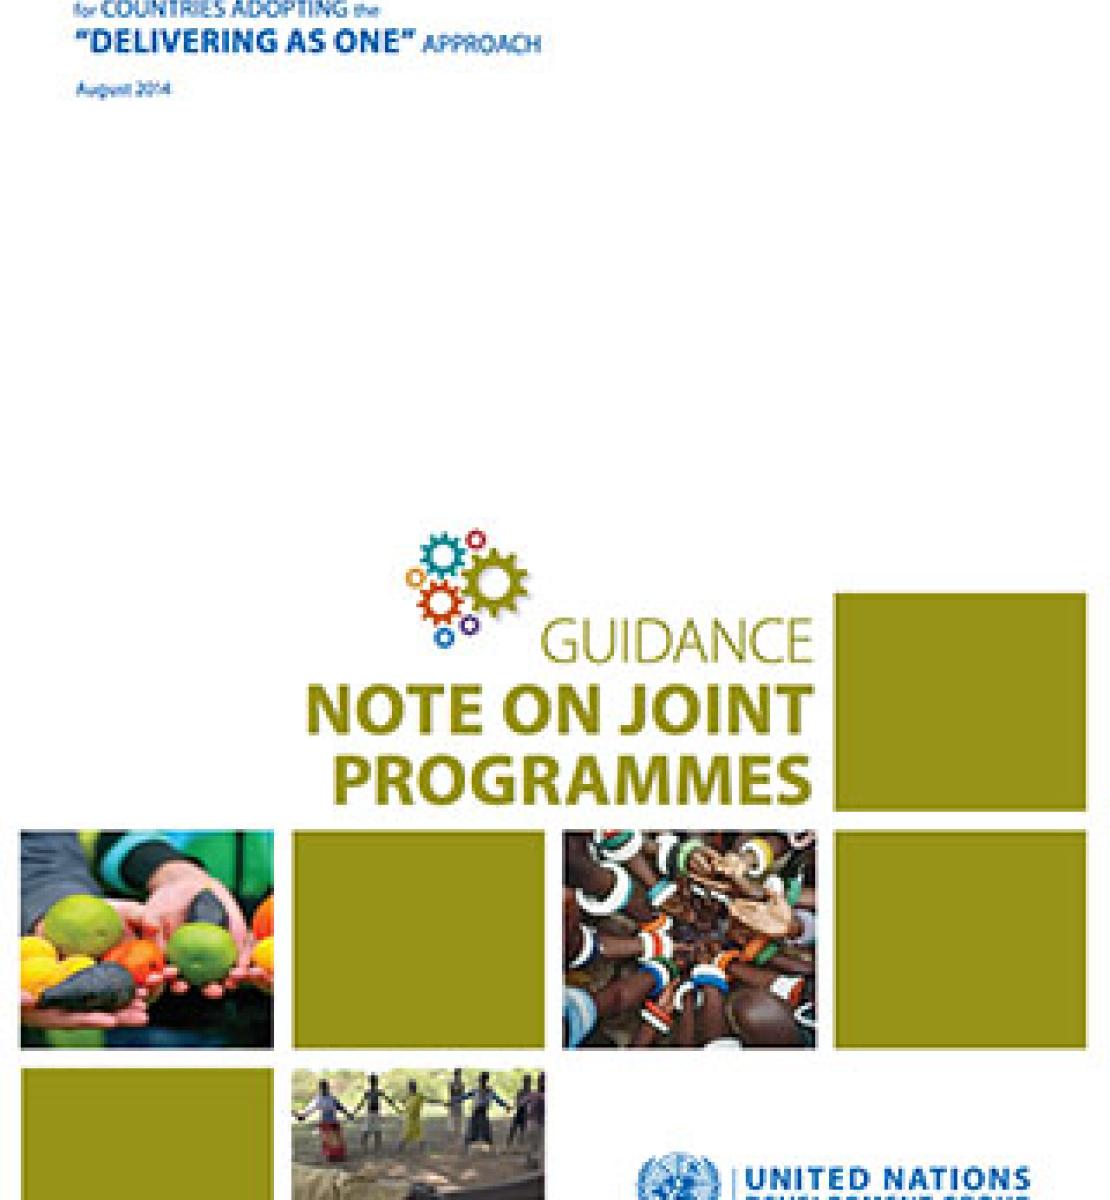 Couverture d'un document intitulé "UNDG Guidance Note on Joint Programme", qui signifie en français "Note d'orientation du GNUD sur les programmes conjoints" sur laquelle sont diposés plusieurs carrés alternant des photograhies et des fonds unis de couleur vert kaki.